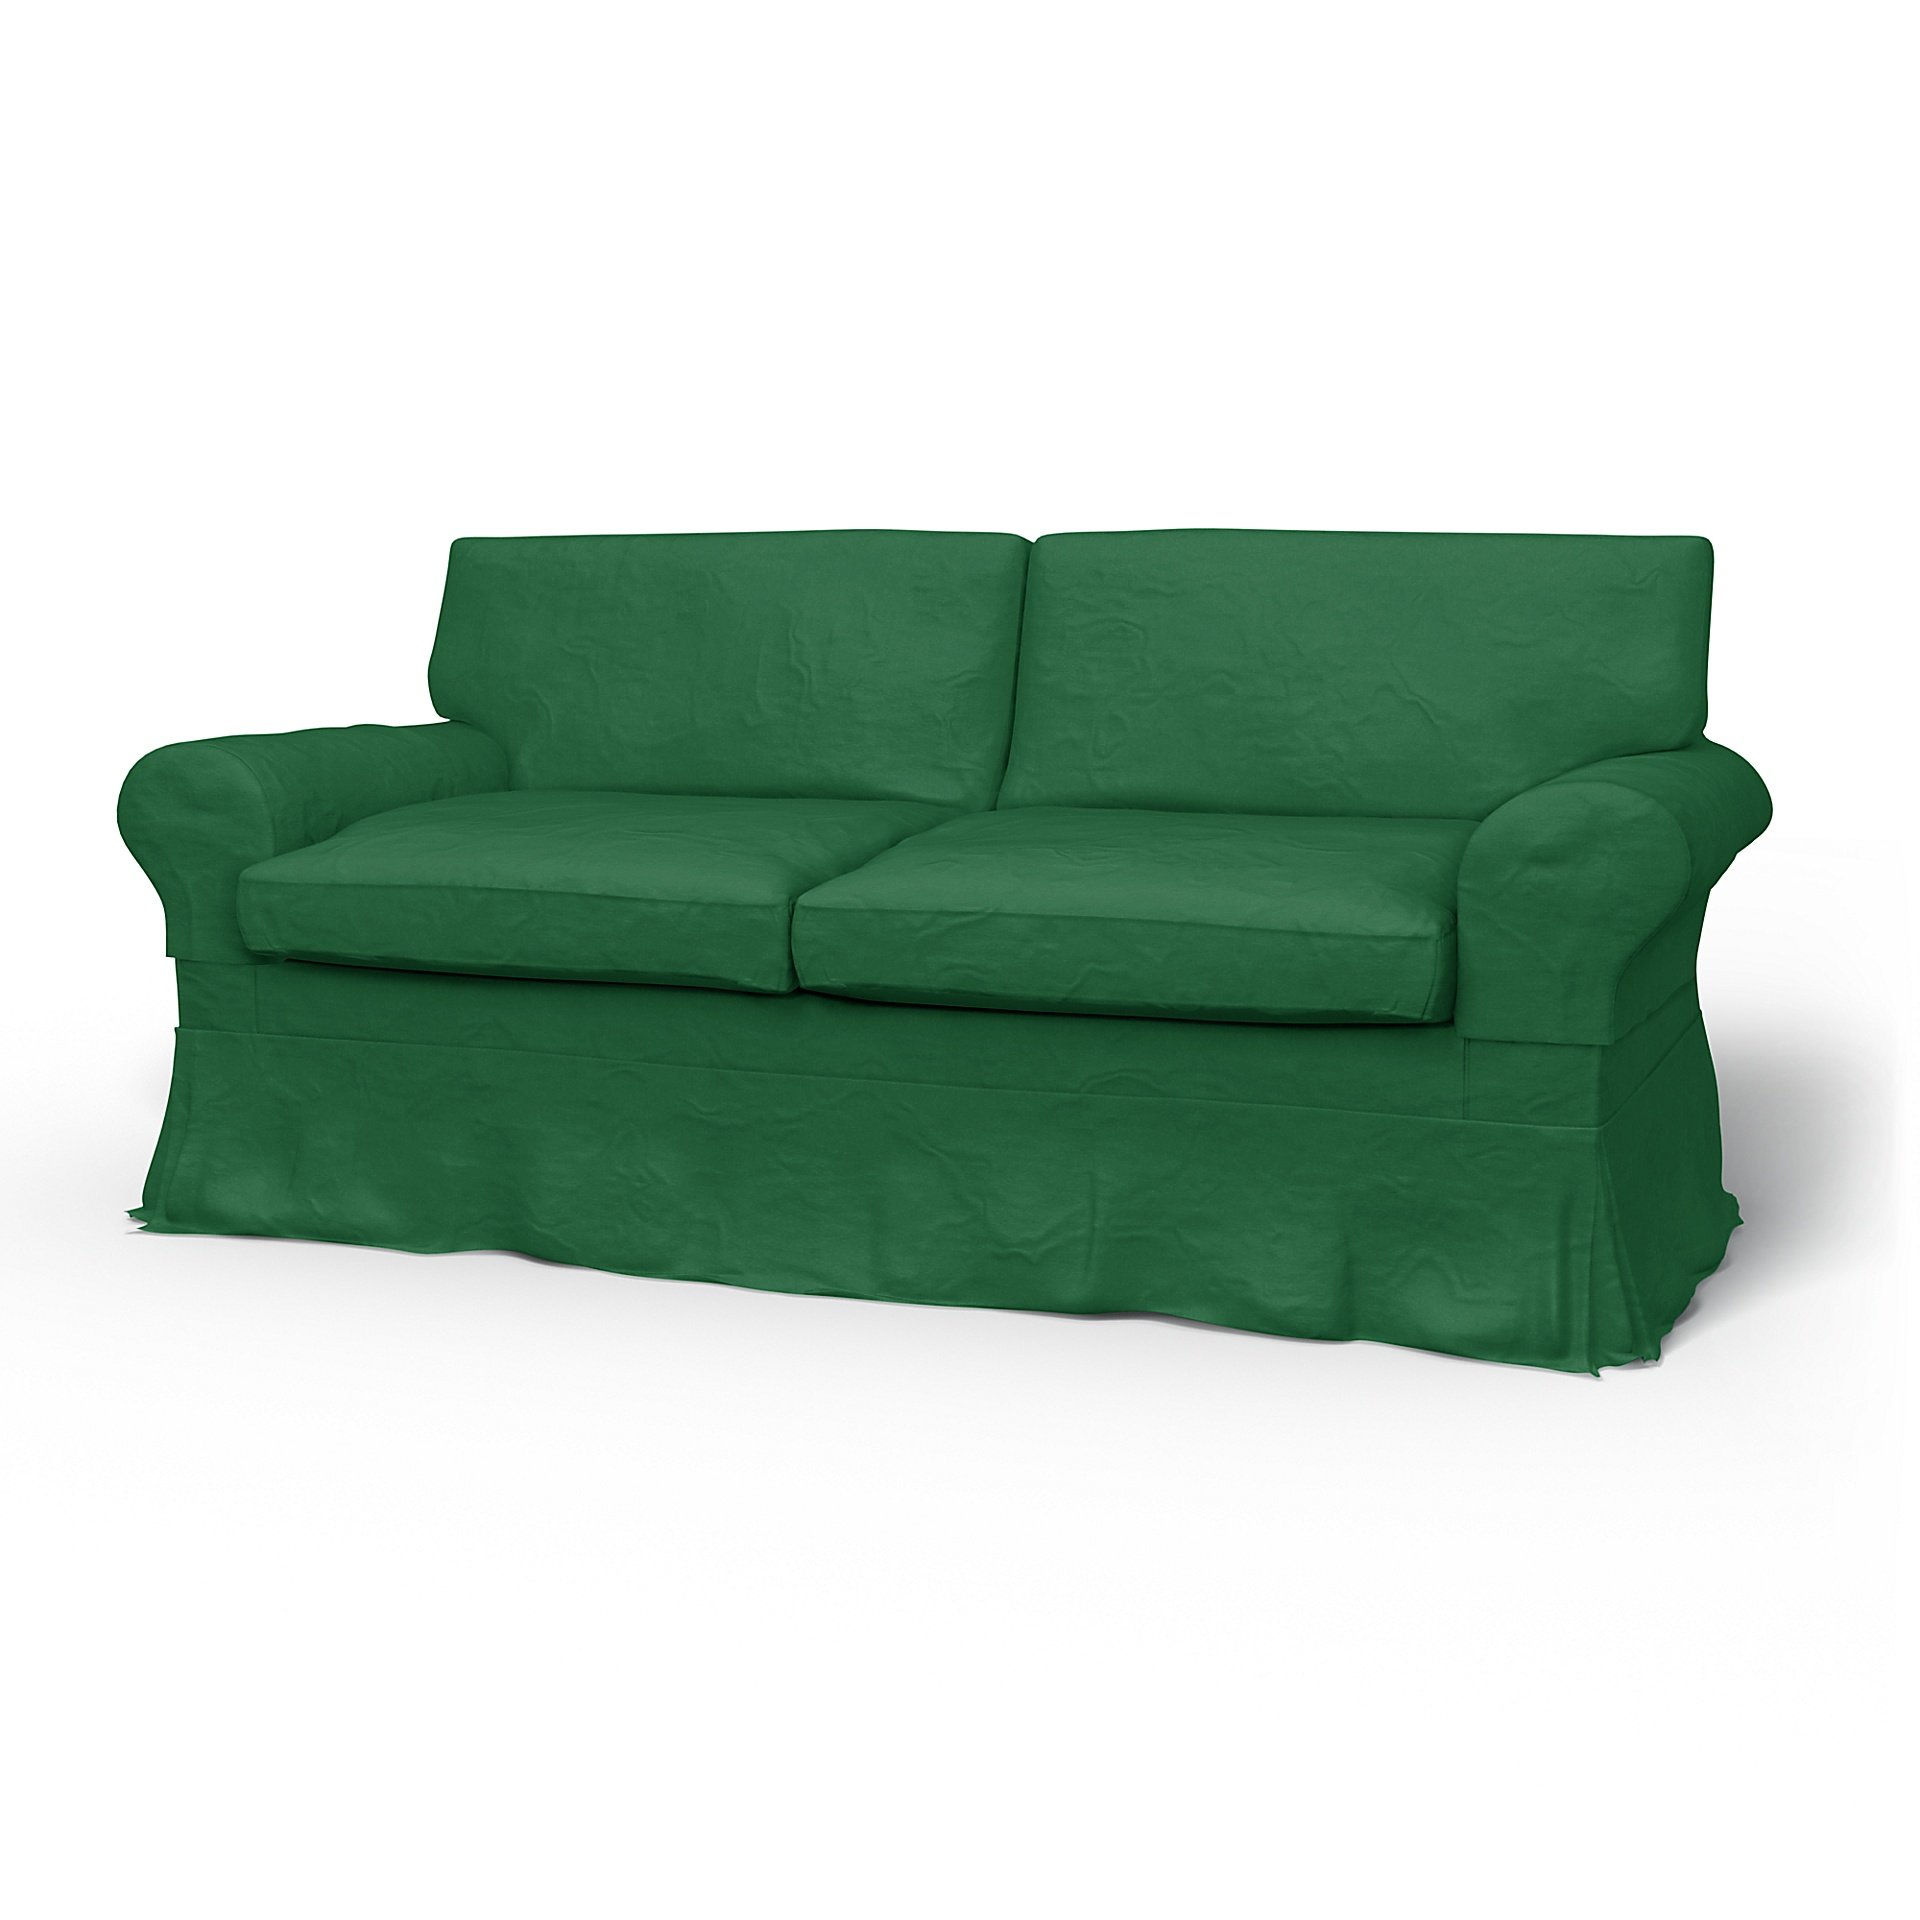 IKEA - Ektorp 2 Seater Sofa Bed Cover, Abundant Green, Velvet - Bemz